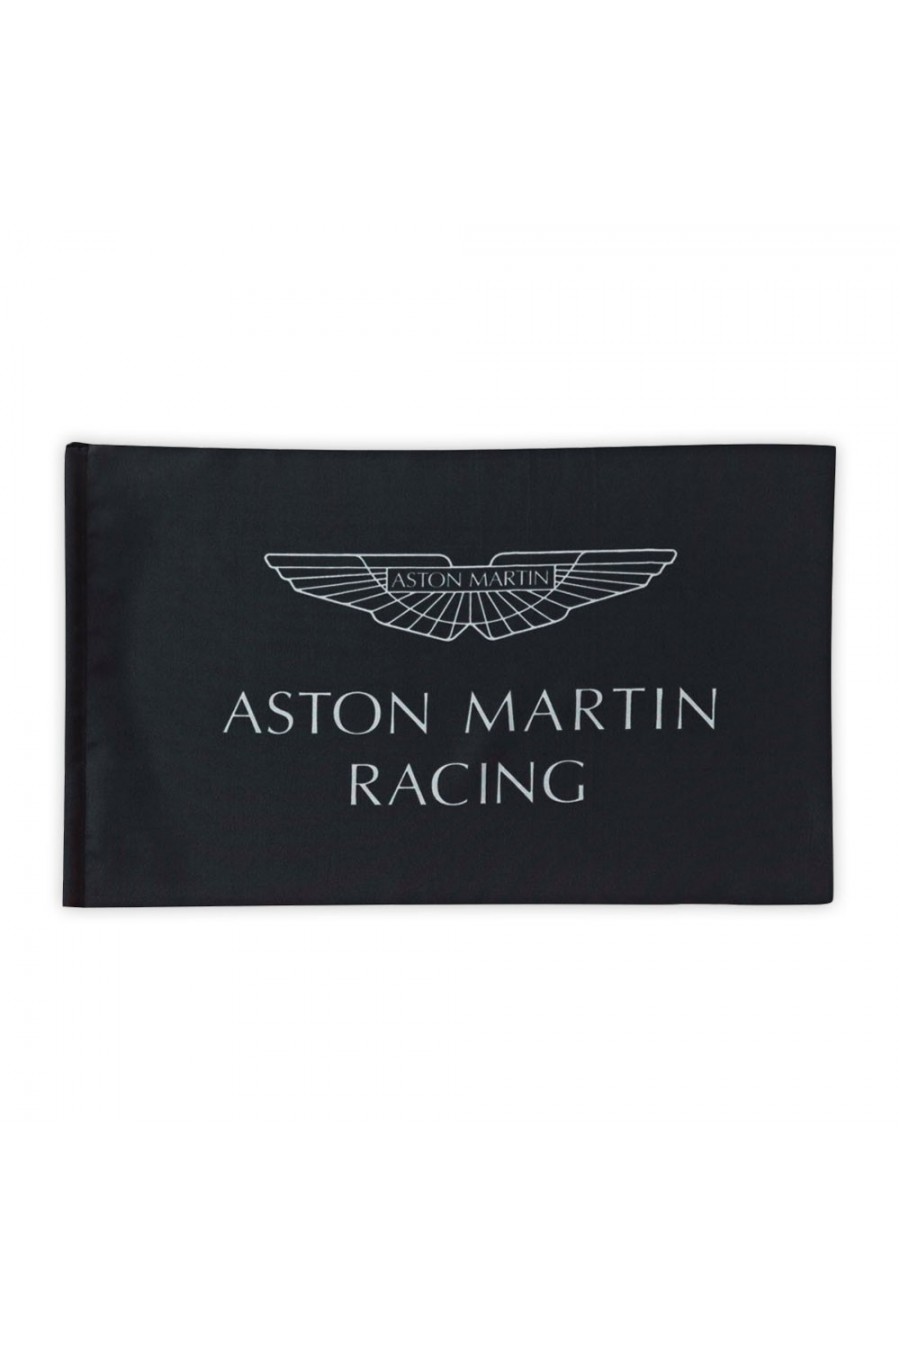 Bandera Aston Martin Racing Aston Martin Racing - 1